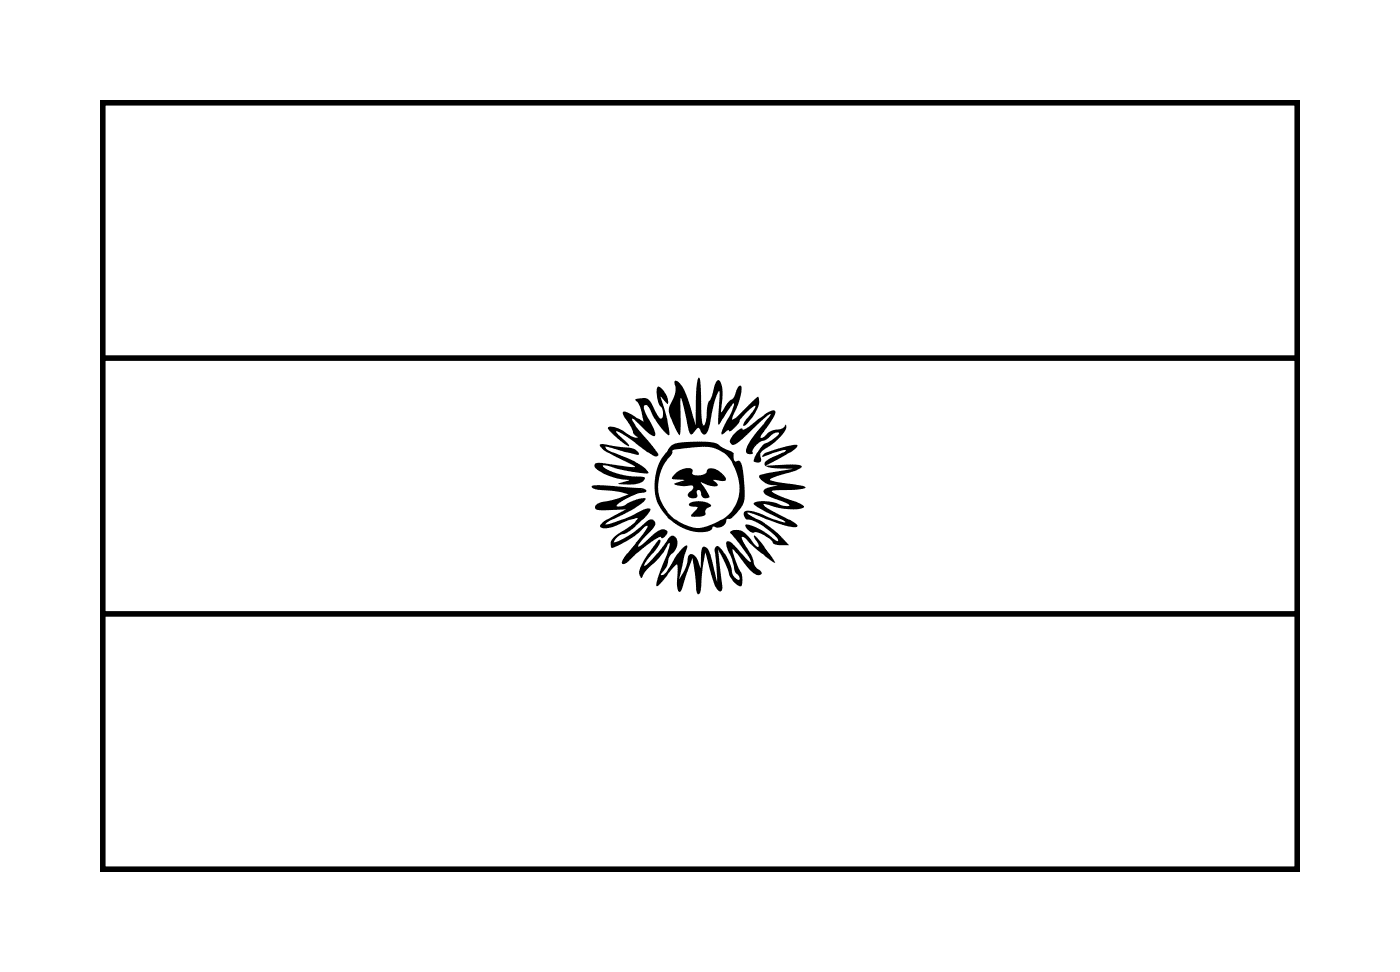  Uma bandeira argentina 